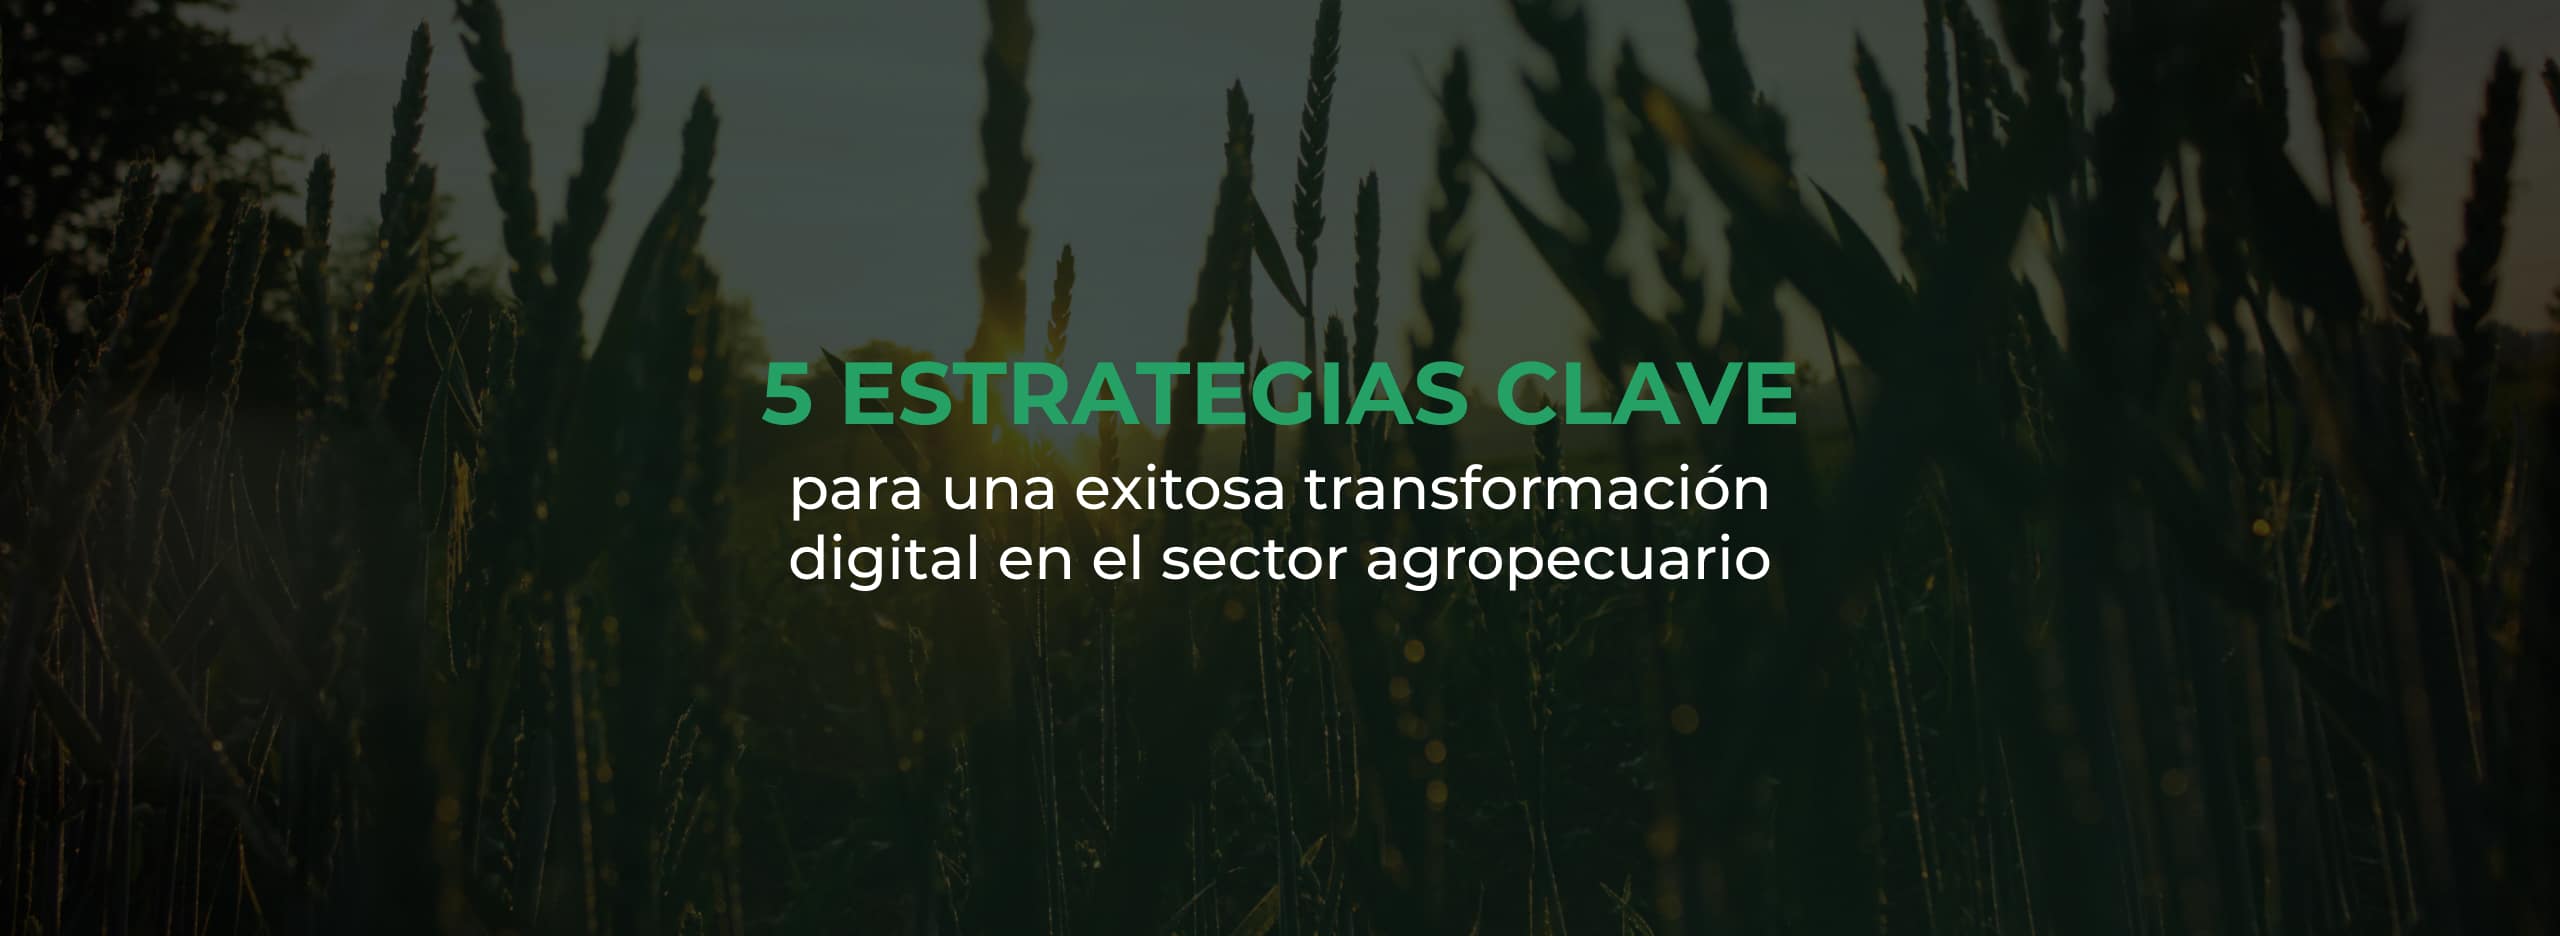 5 estrategias para la transformación digital del sector agropecuario